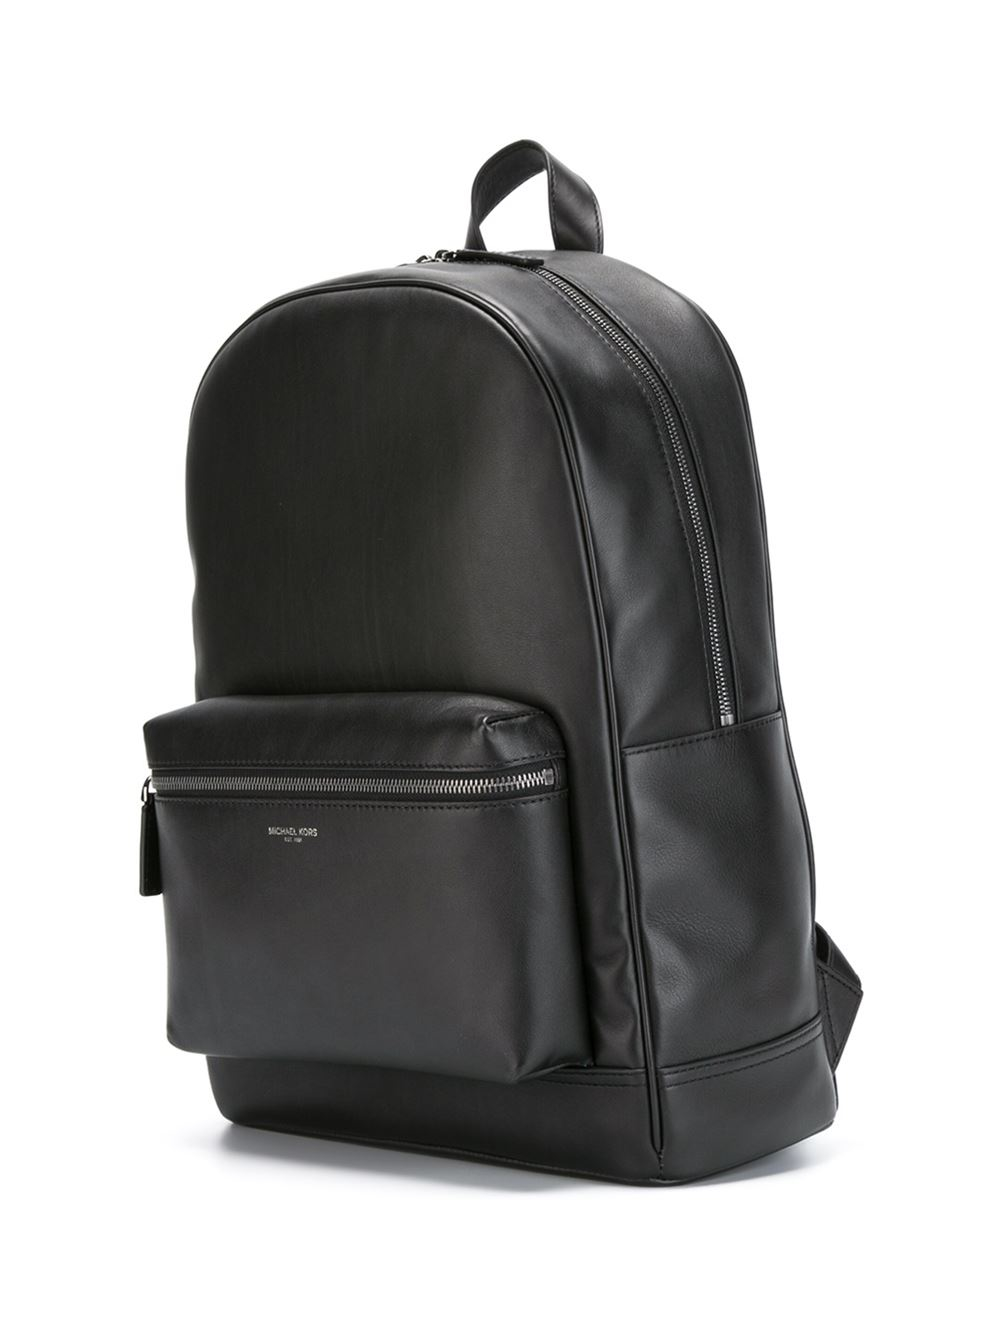 Michael Kors 'kent' Backpack in Black for Men - Lyst